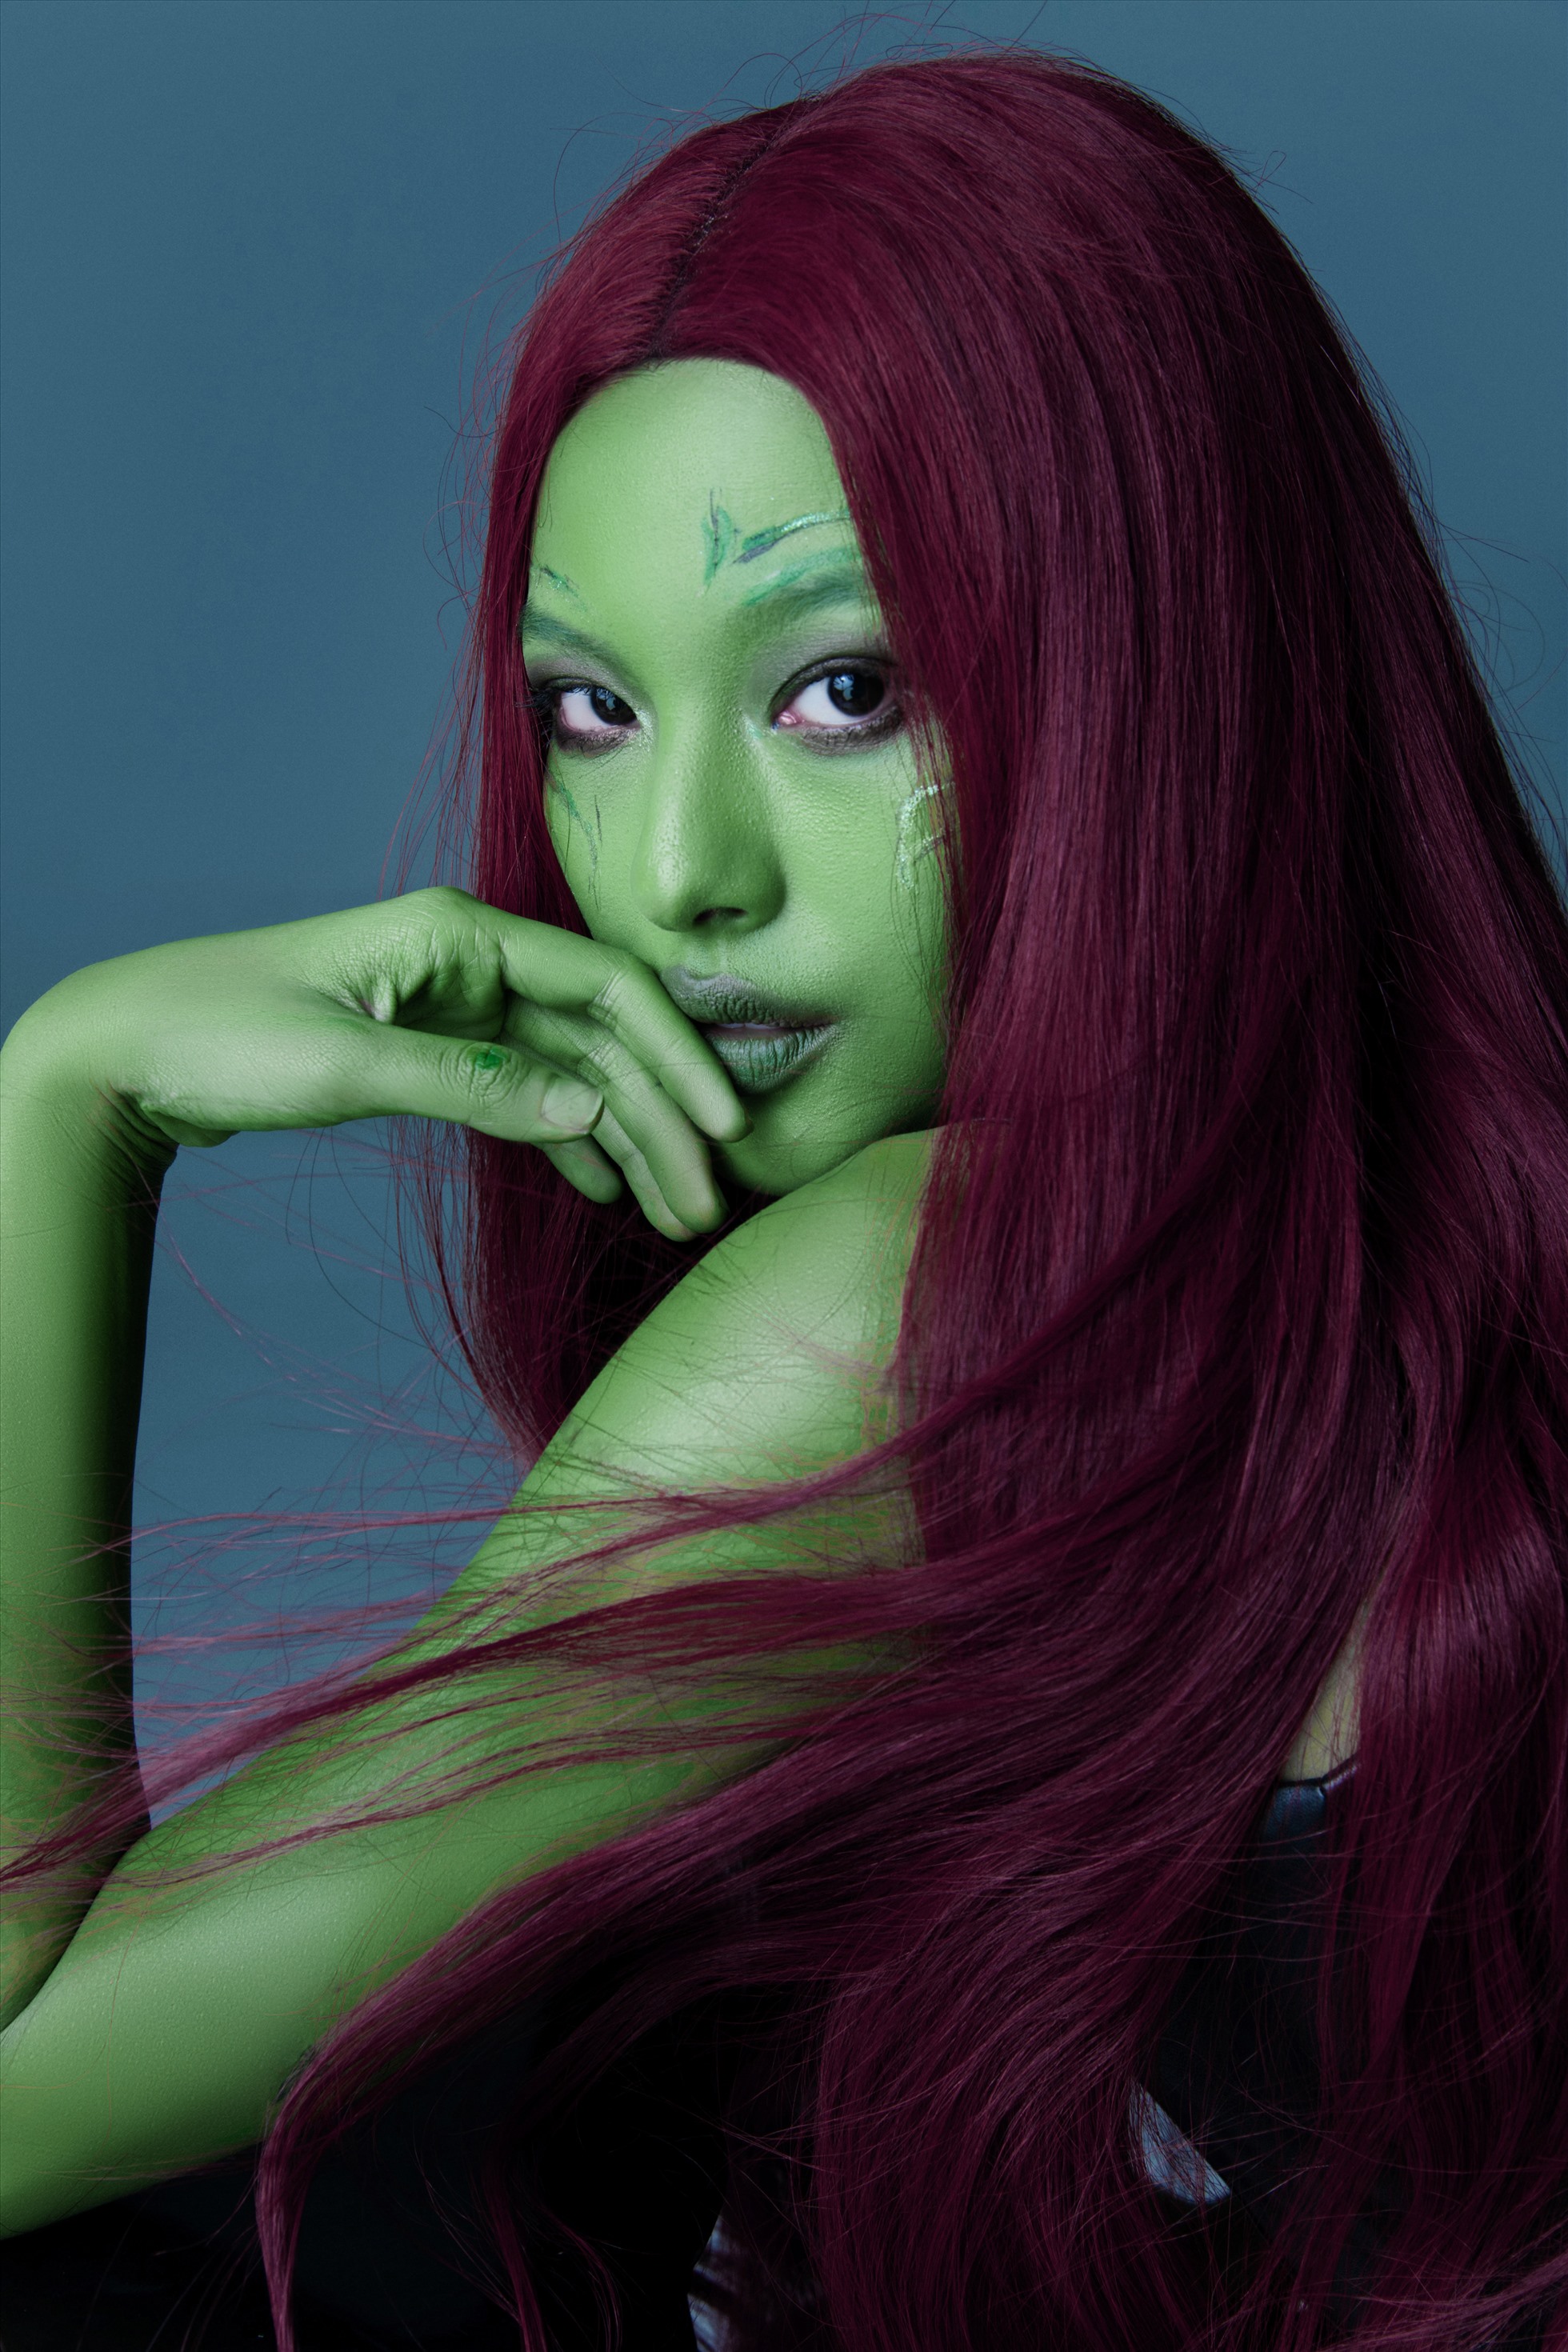 Đặc biệt với nhân vật Gamora, Tú Hảo còn sử dụng hiệu ứng vẽ tranh 3D khiến bức ảnh thêm phần sinh động và sắc nét.